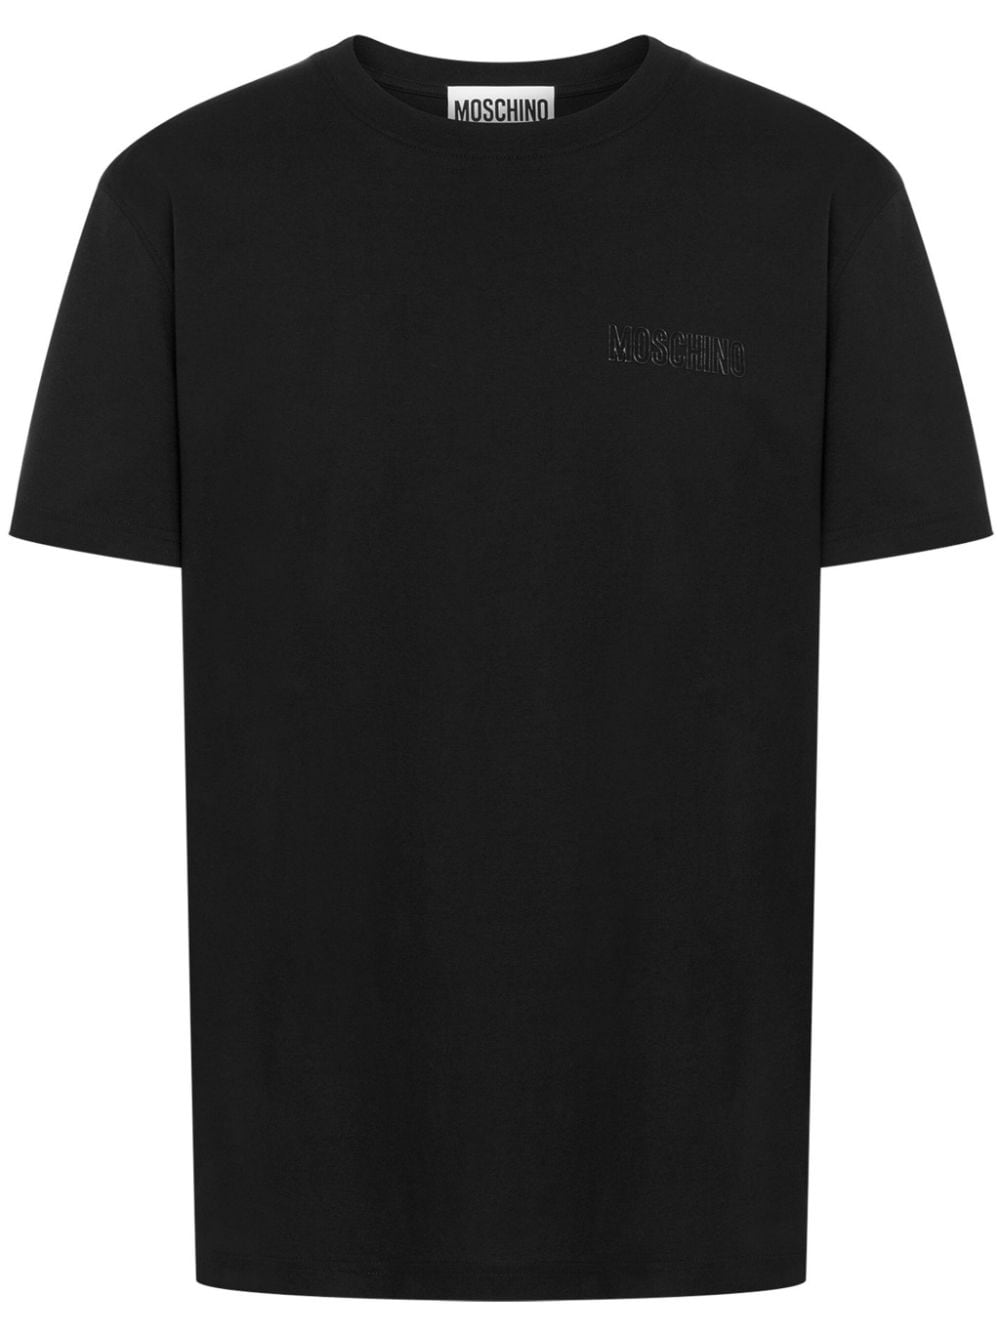 Moschino T-shirt Mit Vorstehendem Logo In Schwarz